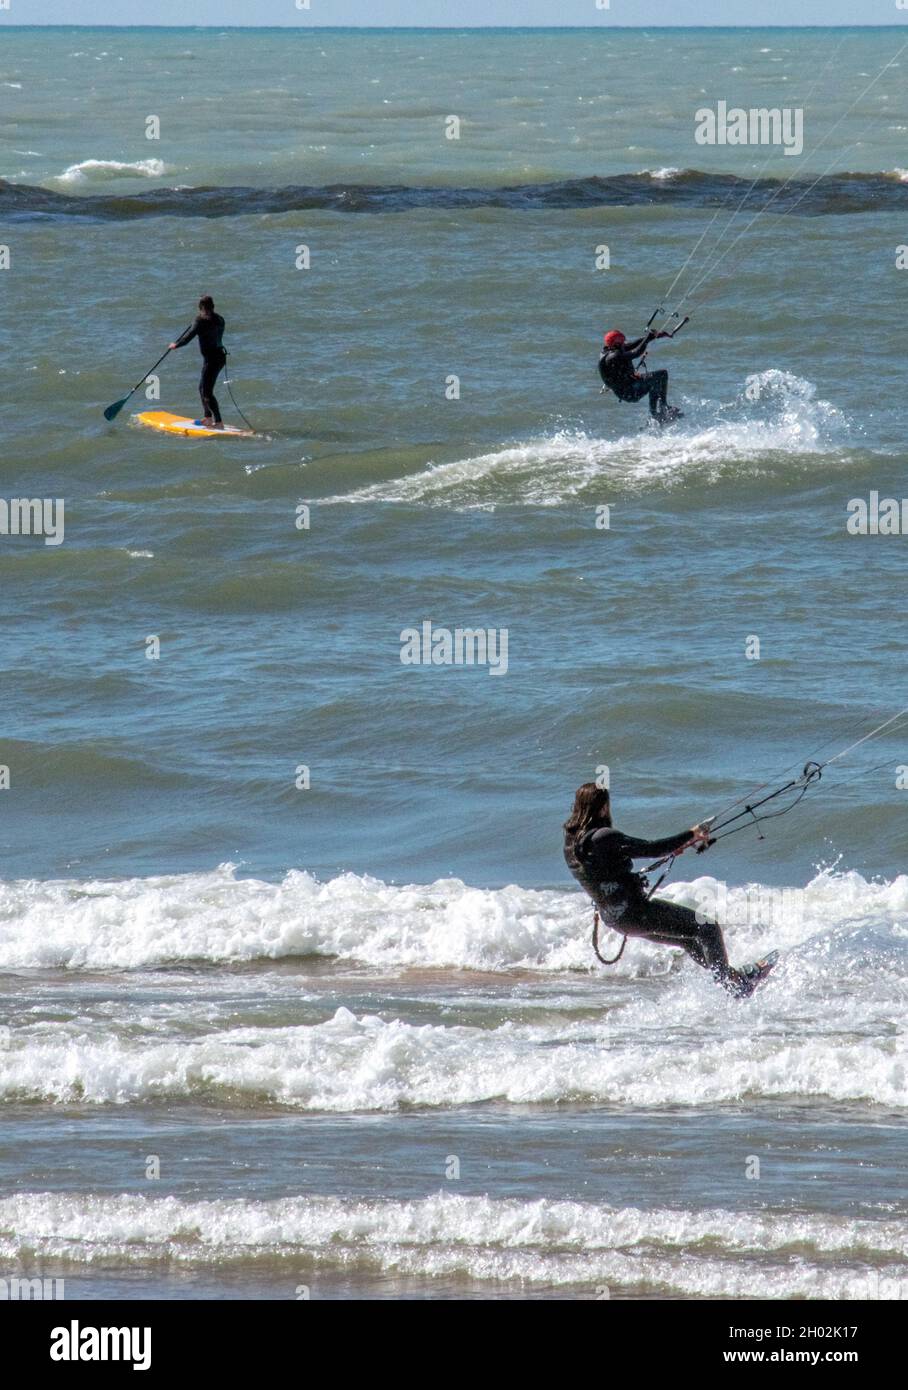 St Joseph MI USA, 26 septembre 2021 ; les surfeurs de cerf-volant et une personne sur une planche à voile, profitent d'une journée venteuse sur le lac Michigan Banque D'Images